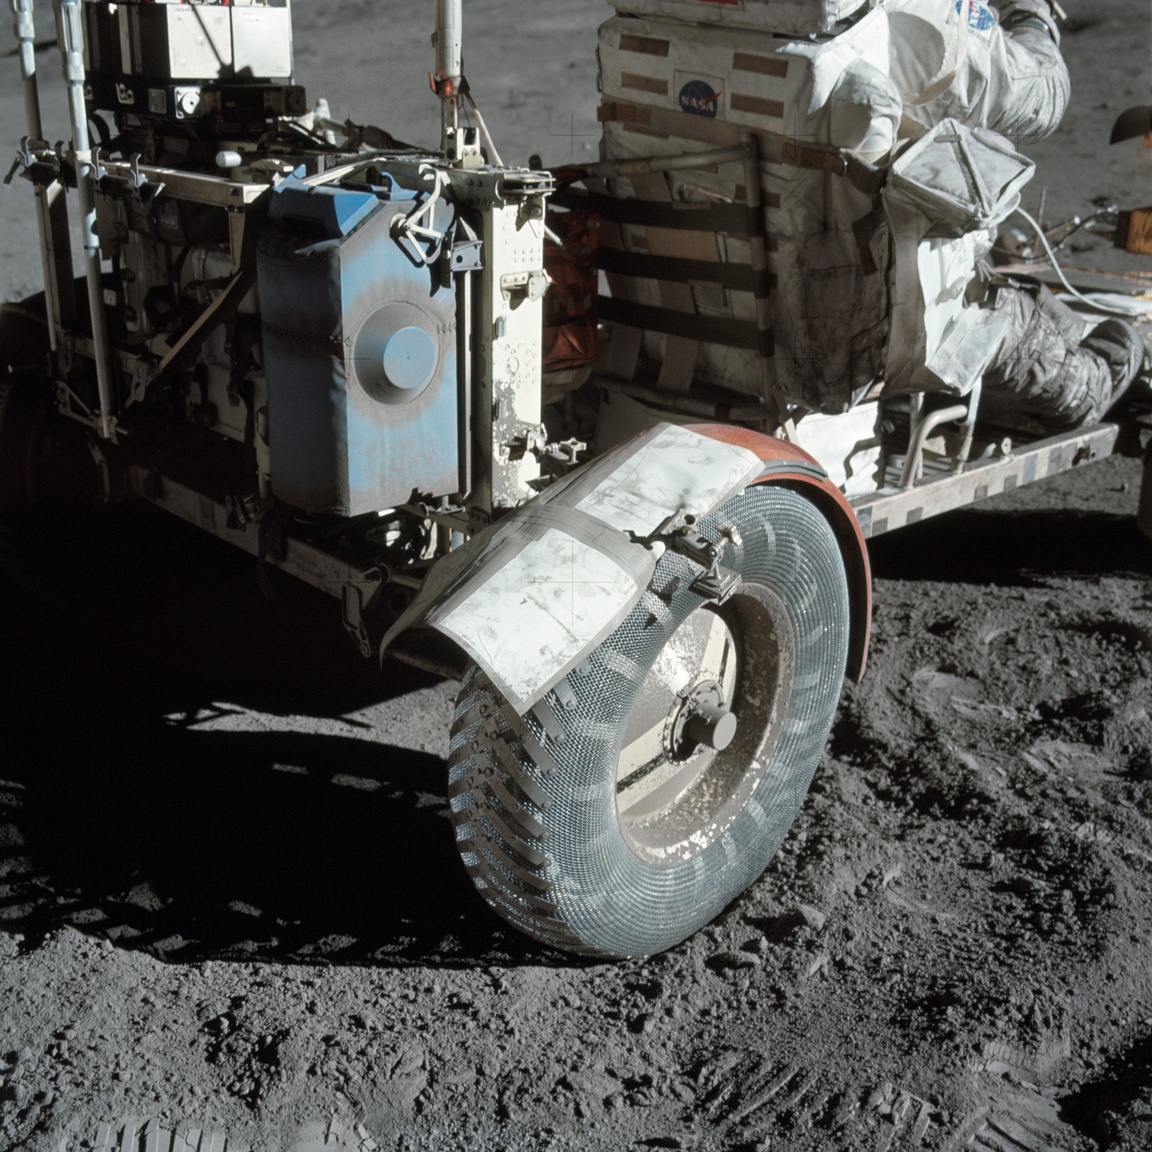 Közeli fotó, ami a sárvédő ideiglenes javításáról készült a Holdon. A NASA először 1999-ben tette közzé a képet az interneten „Holdpor és Ragasztószalag” címmel. A holdautót tartalék térképekkel, fogókkal és ragasztószalaggal kasztnizták. A 38 millió dollárból kifejlesztett járműveket a missziók után nem hozták vissza a Földre, a mai napig a Holdon vannak.
                        